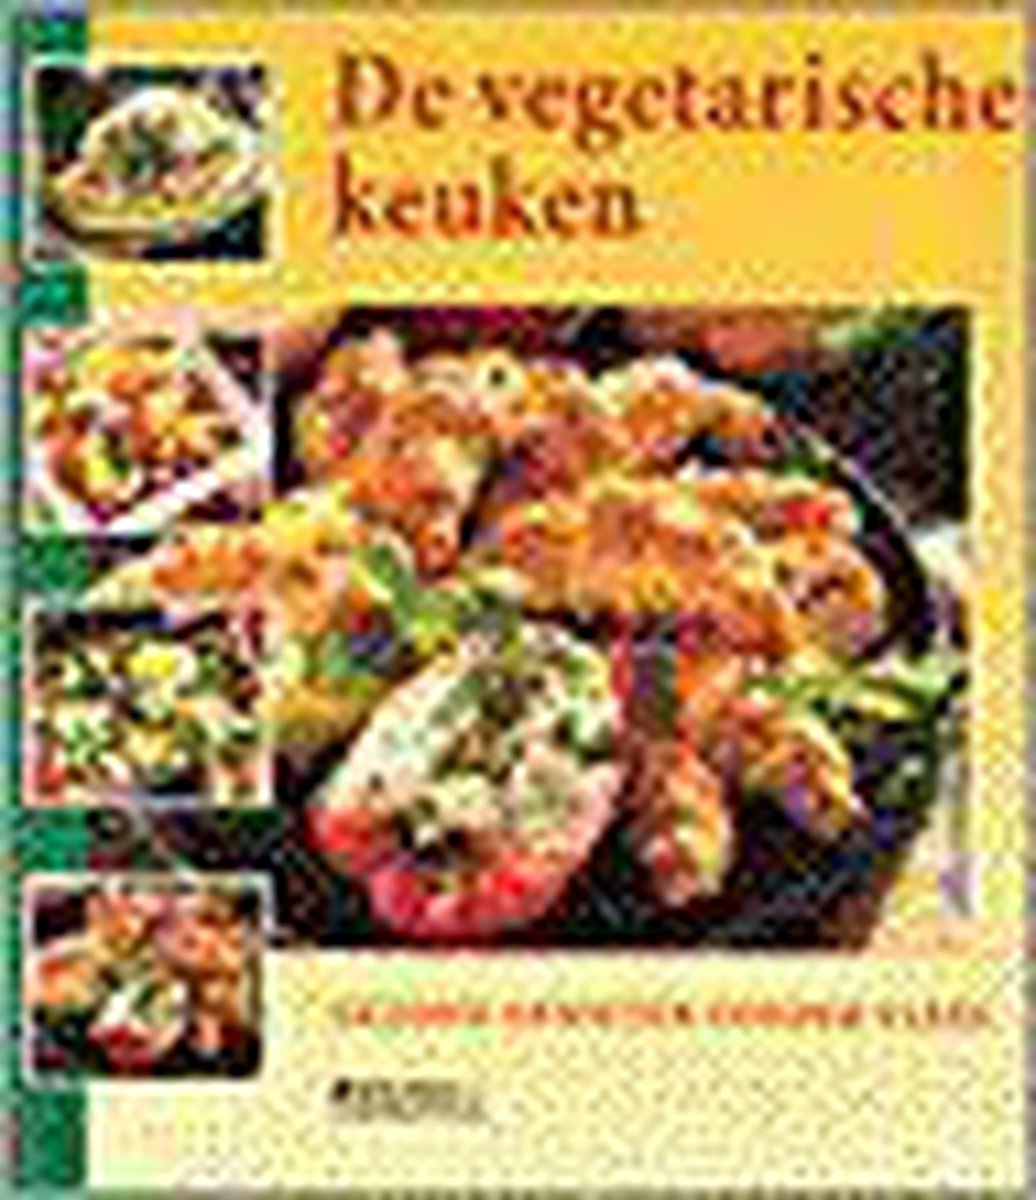 Vegetarische keuken, de. gezond genieten zonder vlees - Veltman Uitgevers B.V.